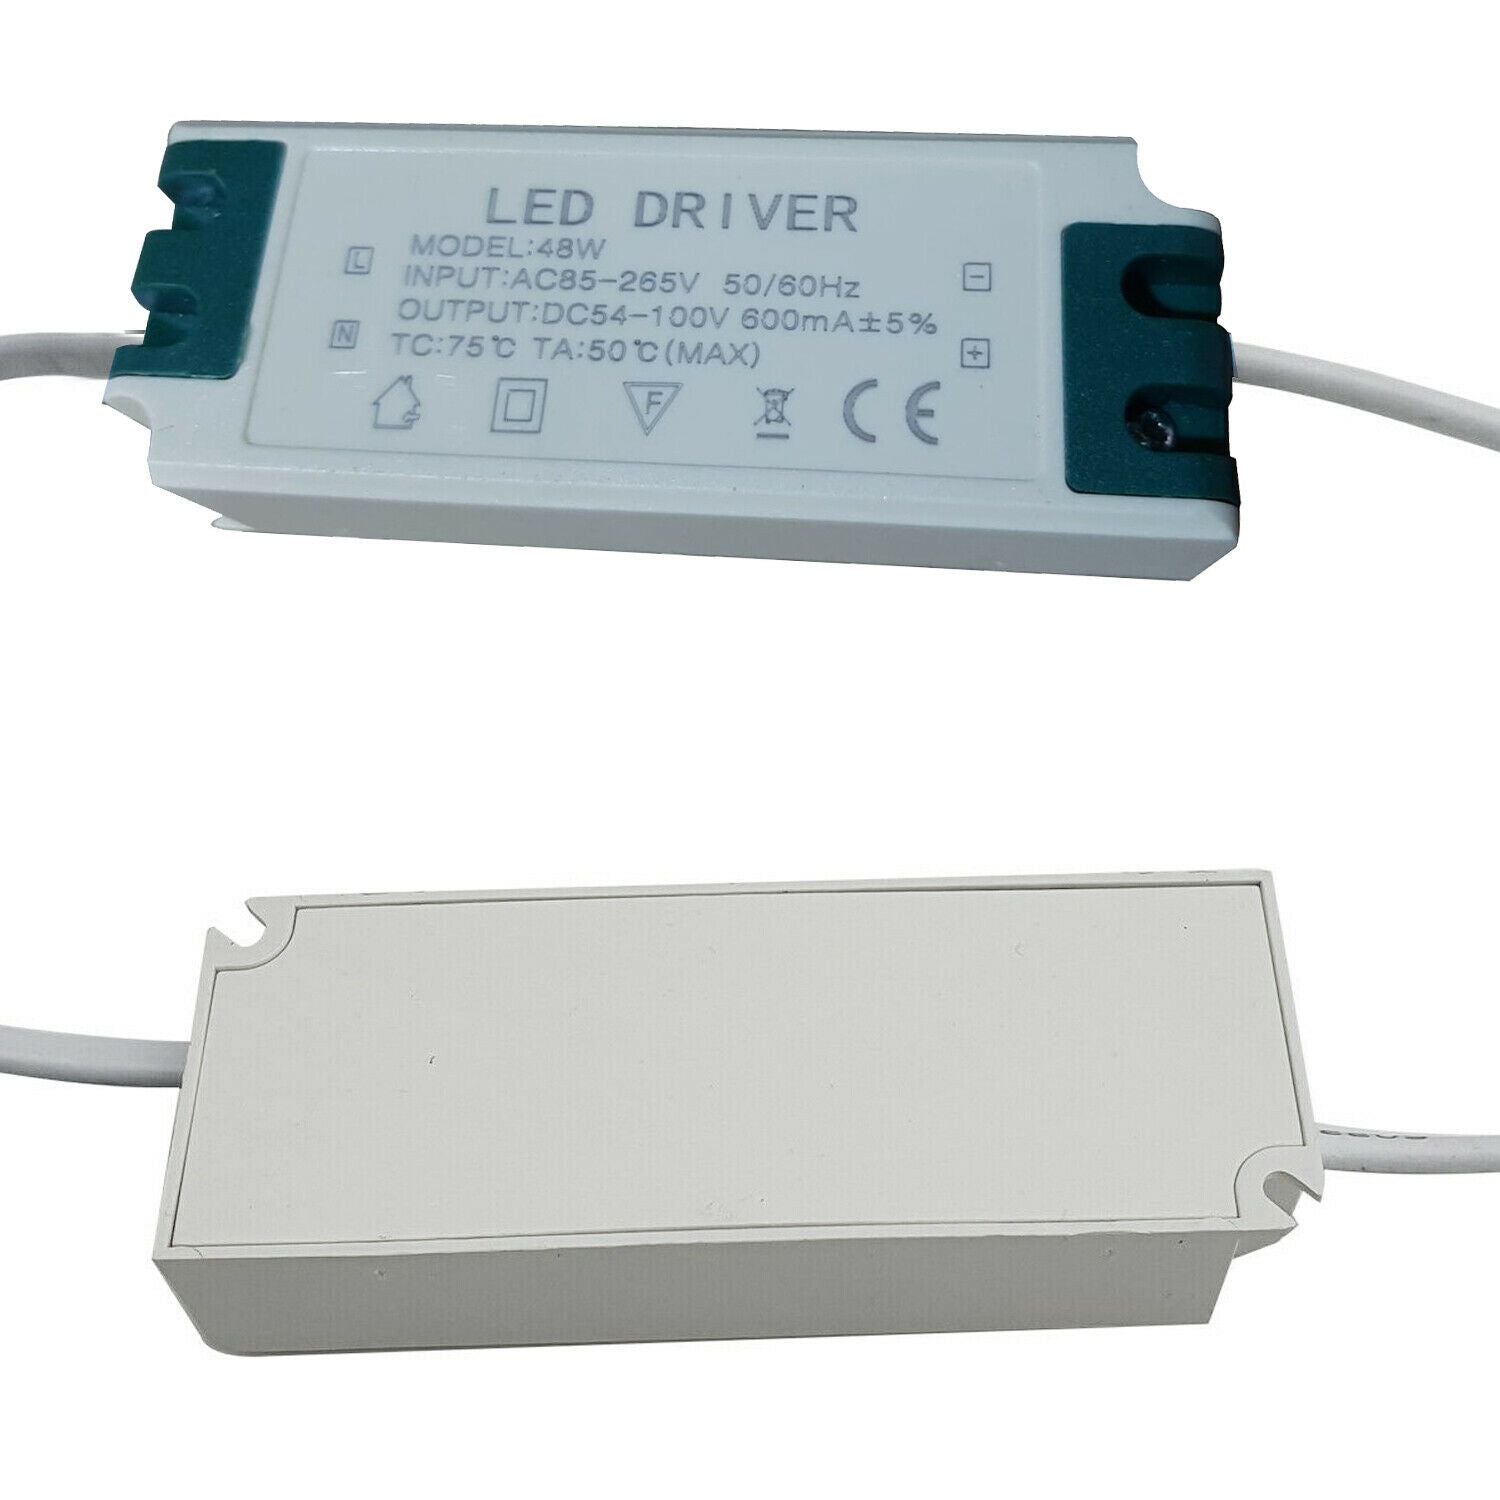 LED-Netzteil 48W Konstantstrom-LED-Treiber - 600mA für LED-Deckenleuchten